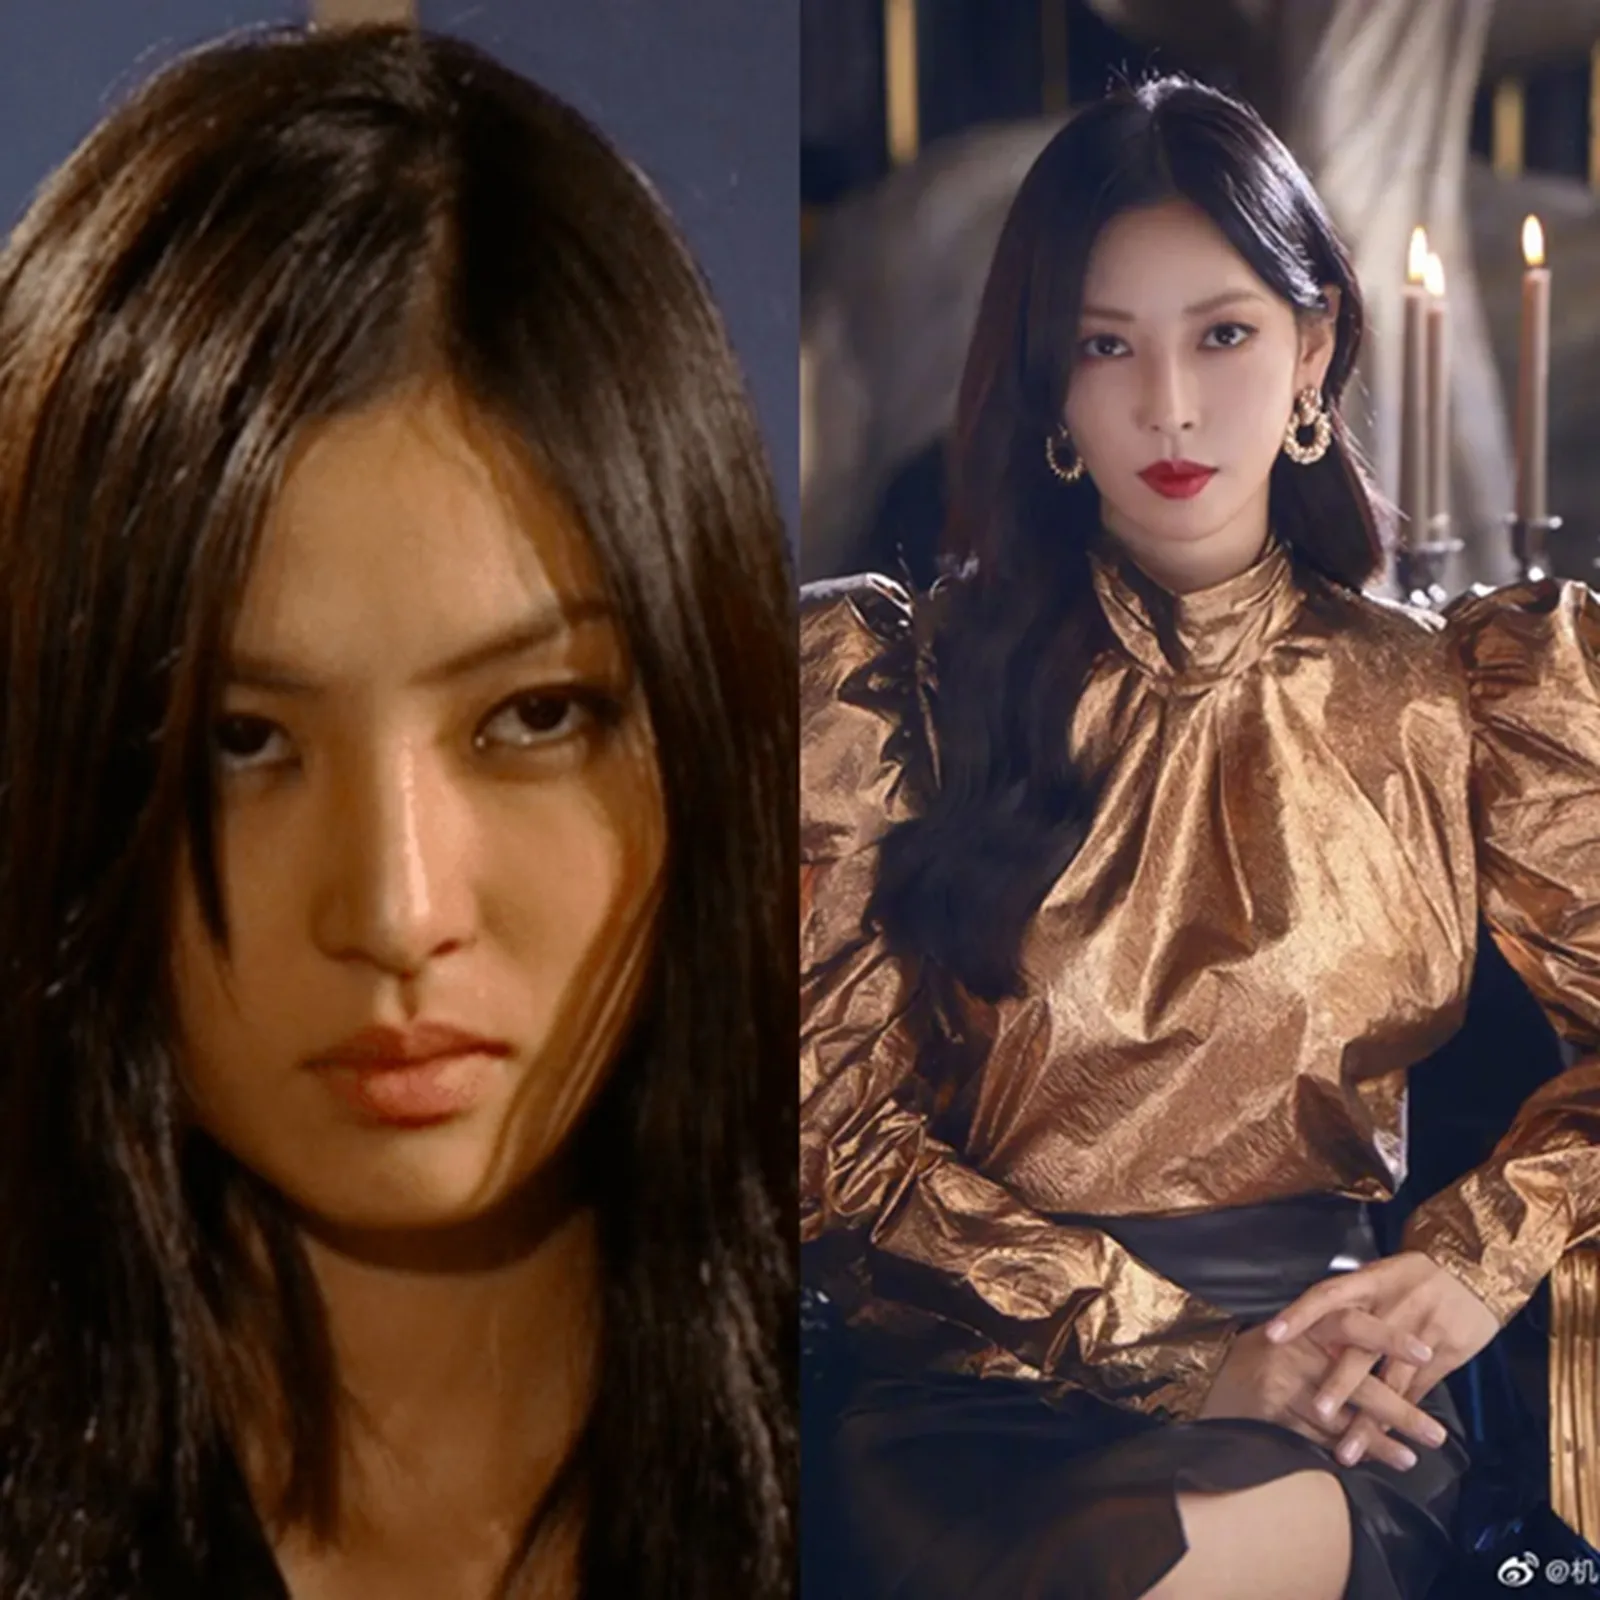 Berperan Antagonis, 6 Aktris Senior Korea Ini Bikin Penonton Emosi